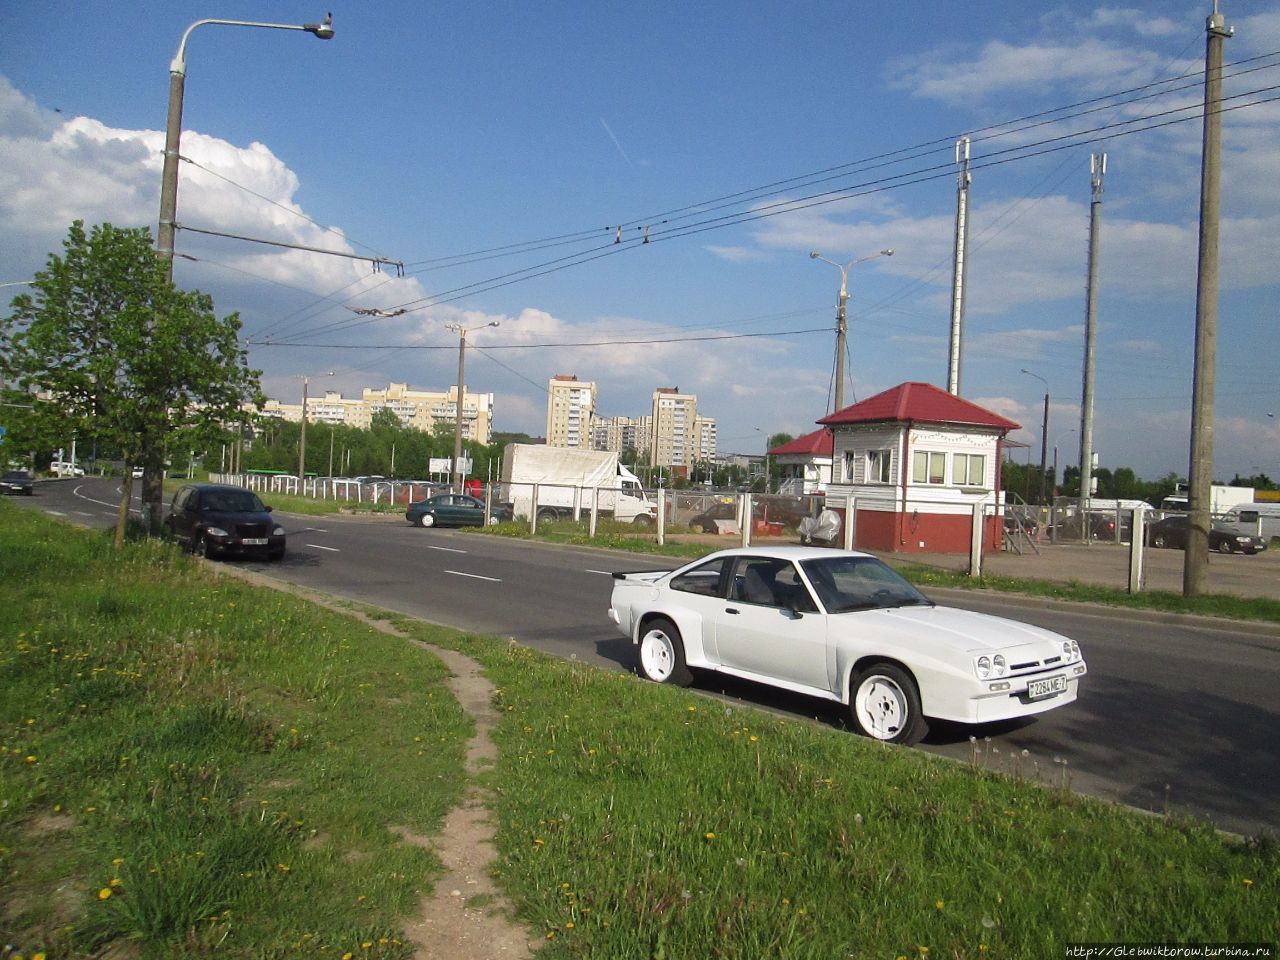 Поездка на трамвае из центра Минска в парк Надежды Грековой Минск, Беларусь